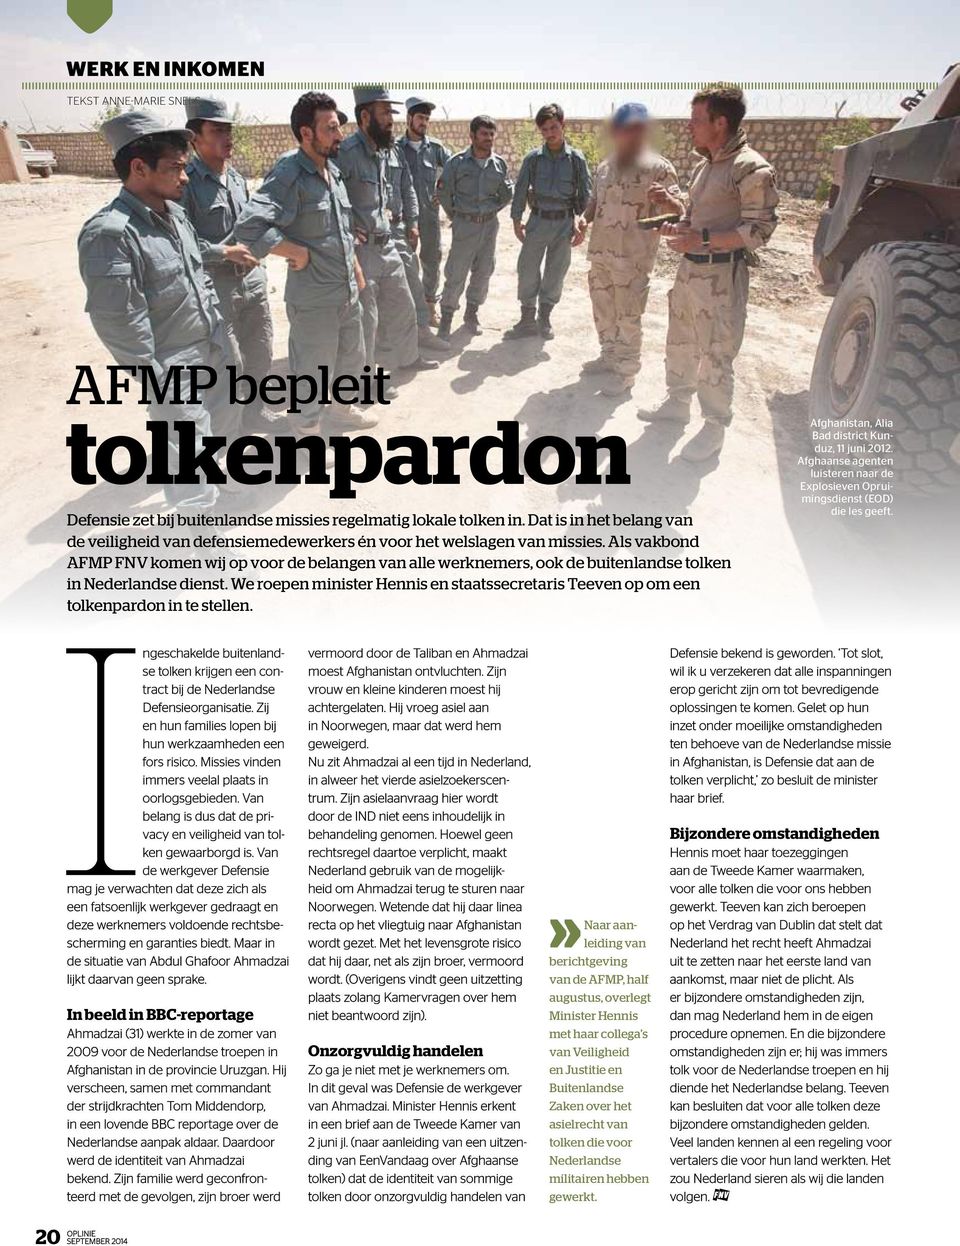 Als vakbond AFMP FNV komen wij op voor de belangen van alle werknemers, ook de buitenlandse tolken in Nederlandse dienst.